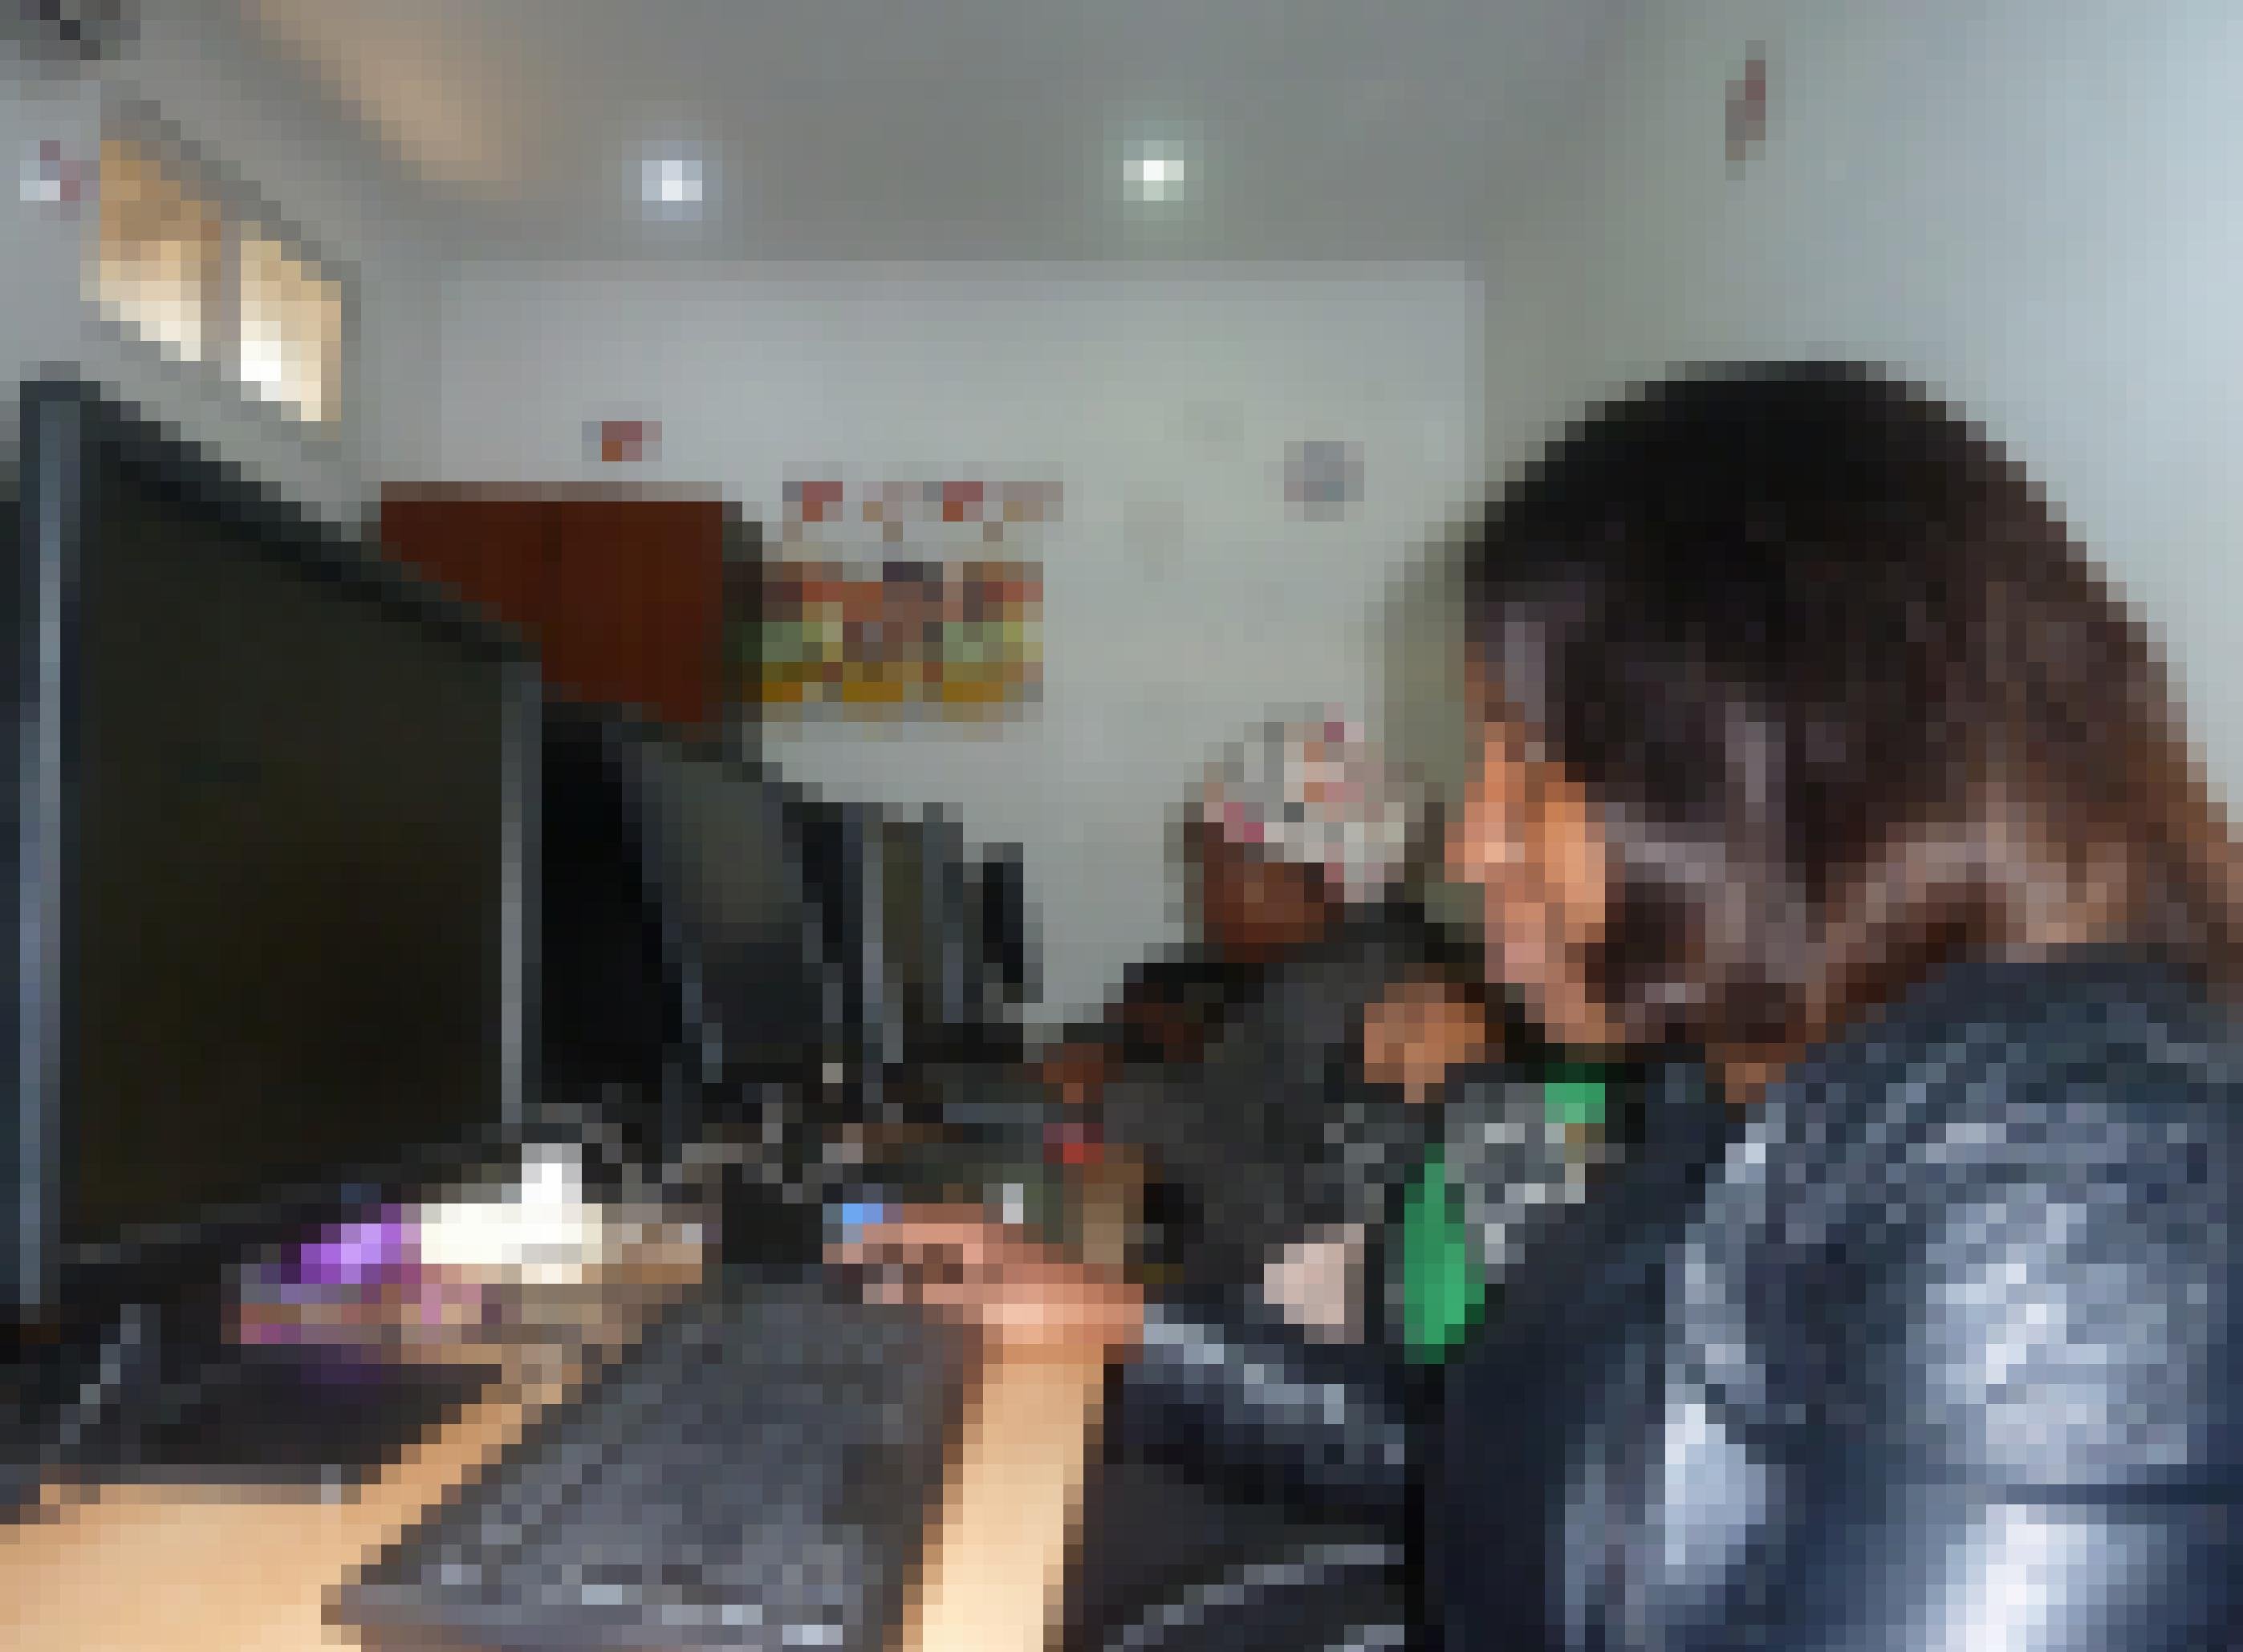 Blick in den sogenannten Berater-Hub, wo die jungen Leute vor Computer-Bildschirmen sitzen